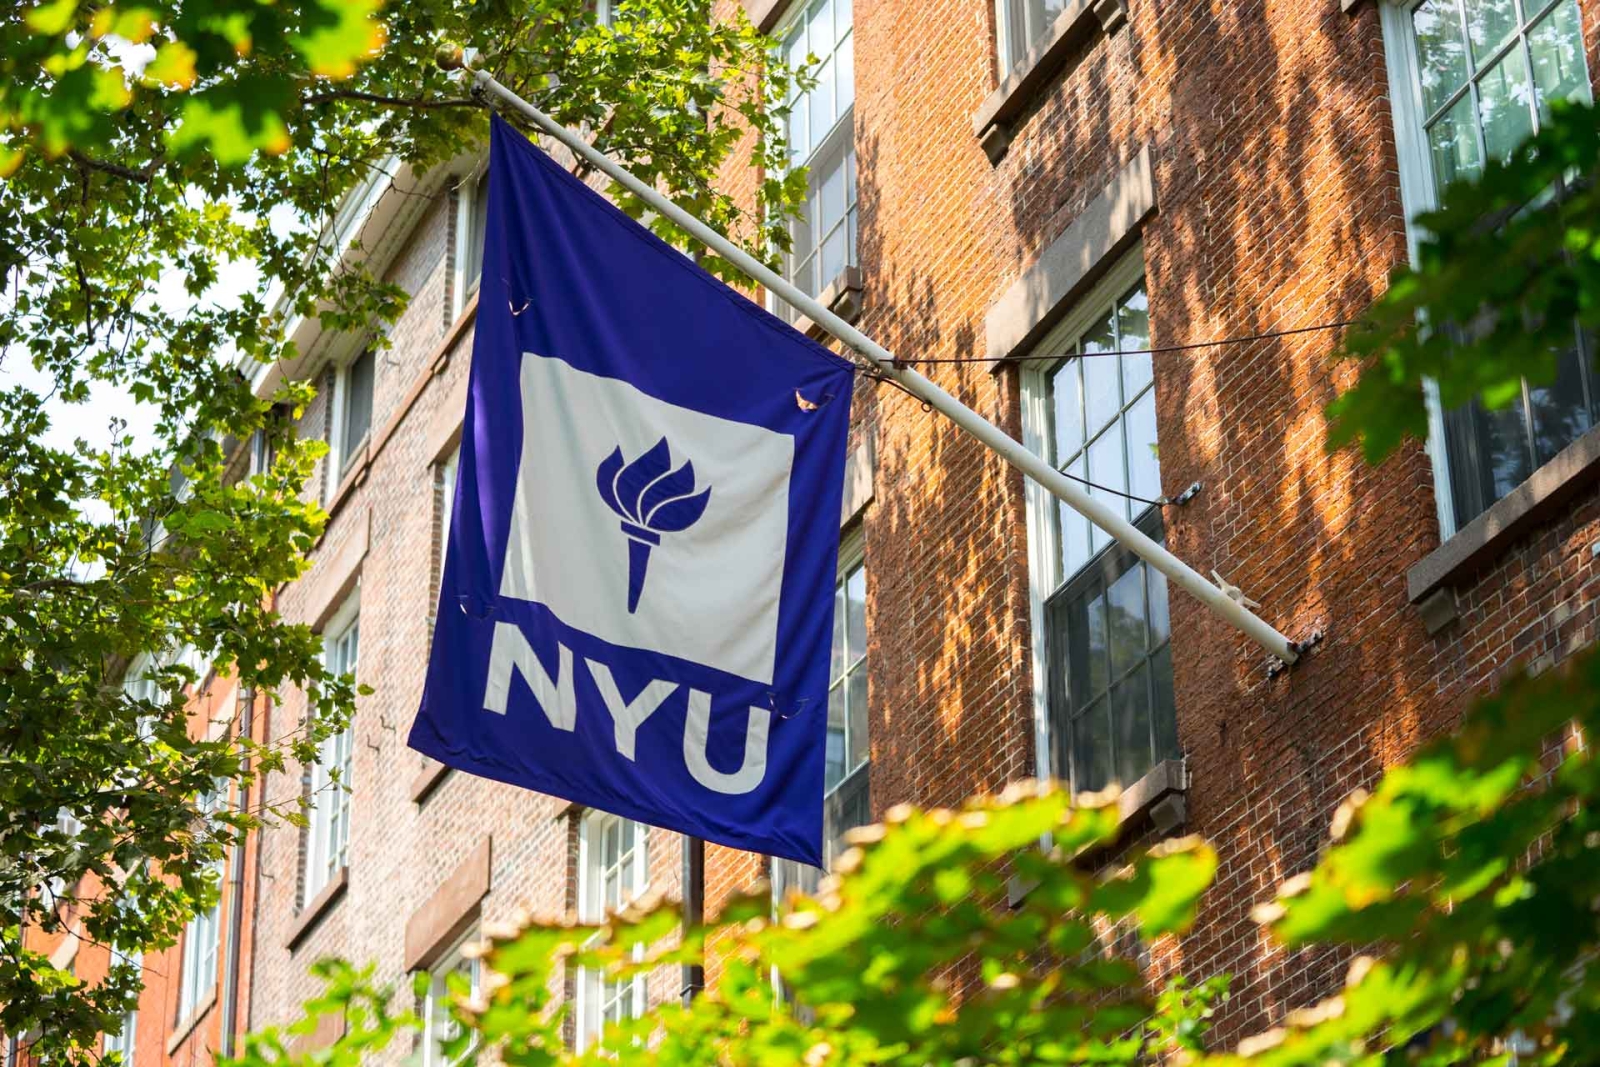 NYU Flag hanging outside brick building